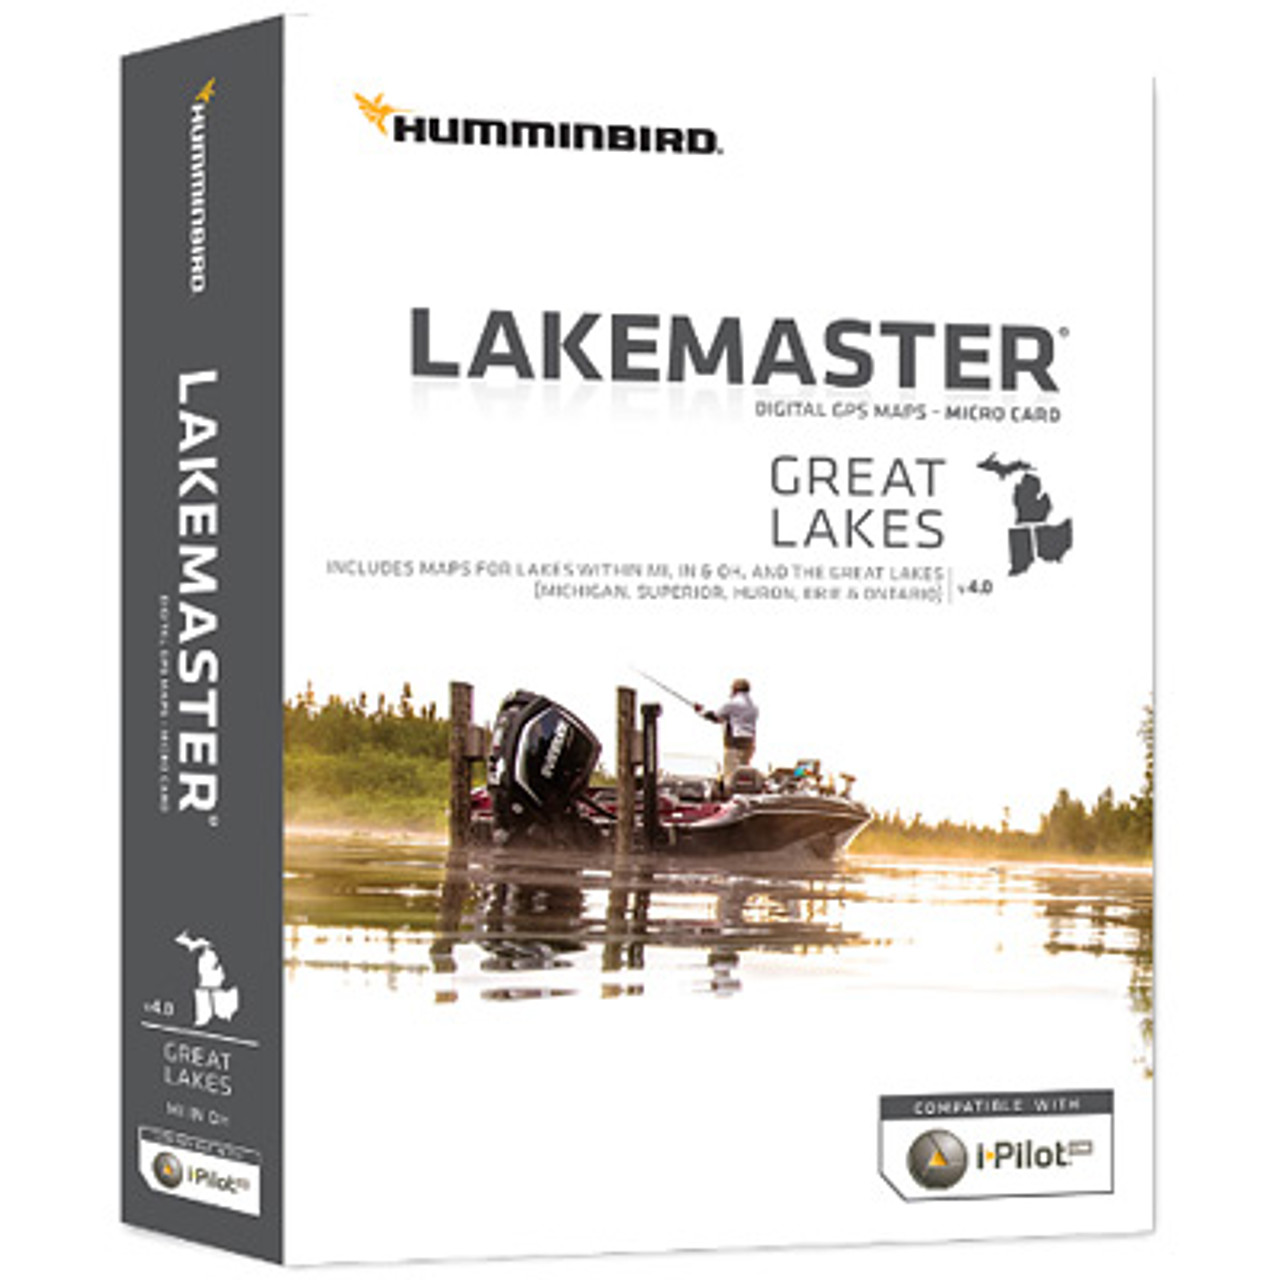 LakeMaster Great Lakes v4.0 Digital Maps by Humminbird